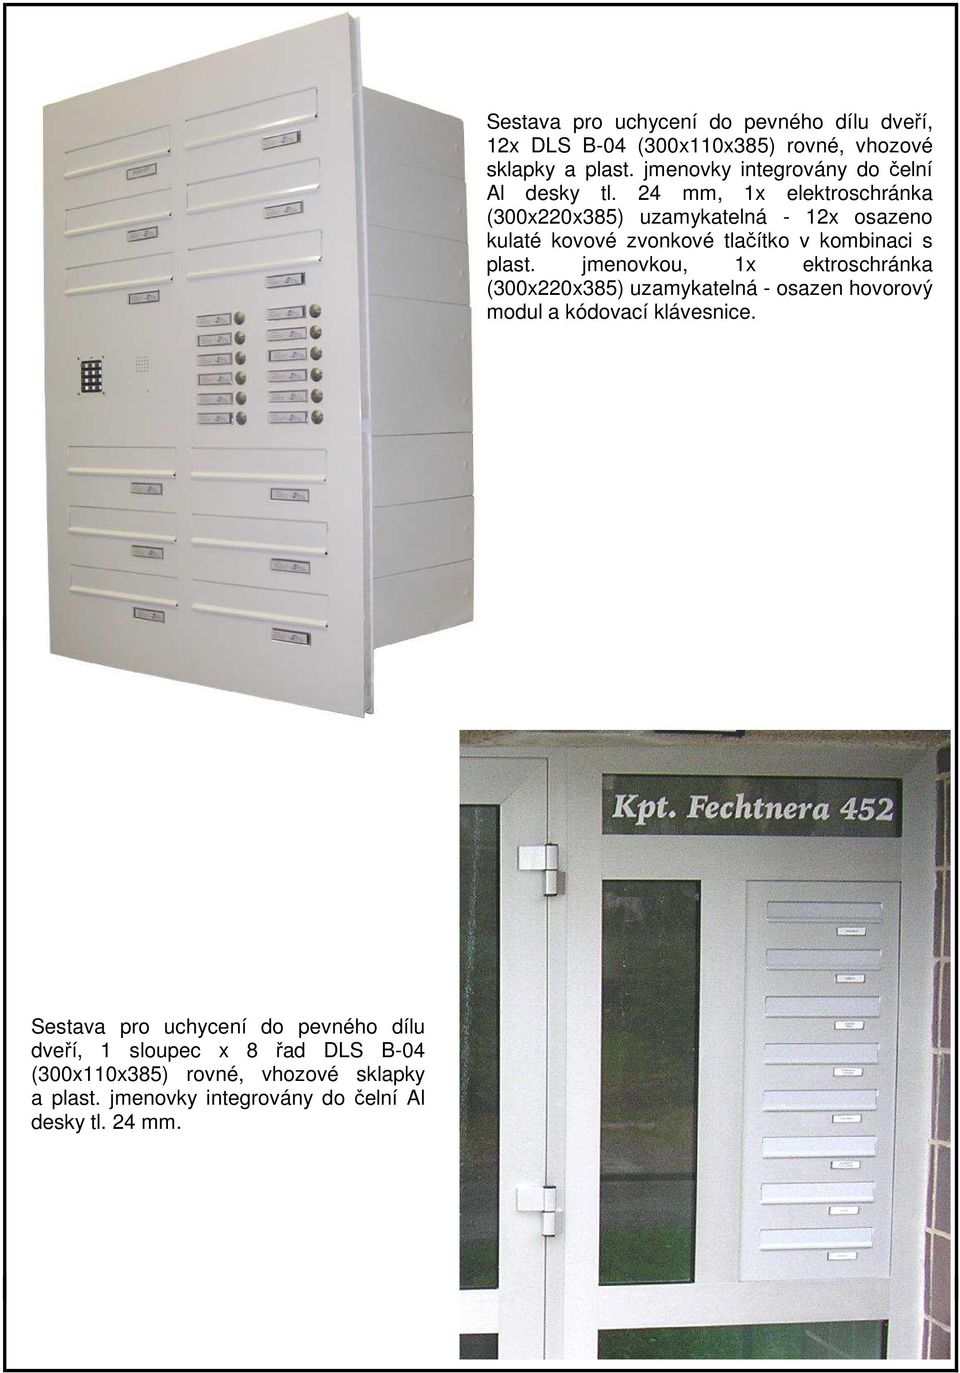 Sestava pro uchycení do pevného dílu dveří, 12x DLS B-04 (300x110x385) rovné, vhozové sklapky a plast.